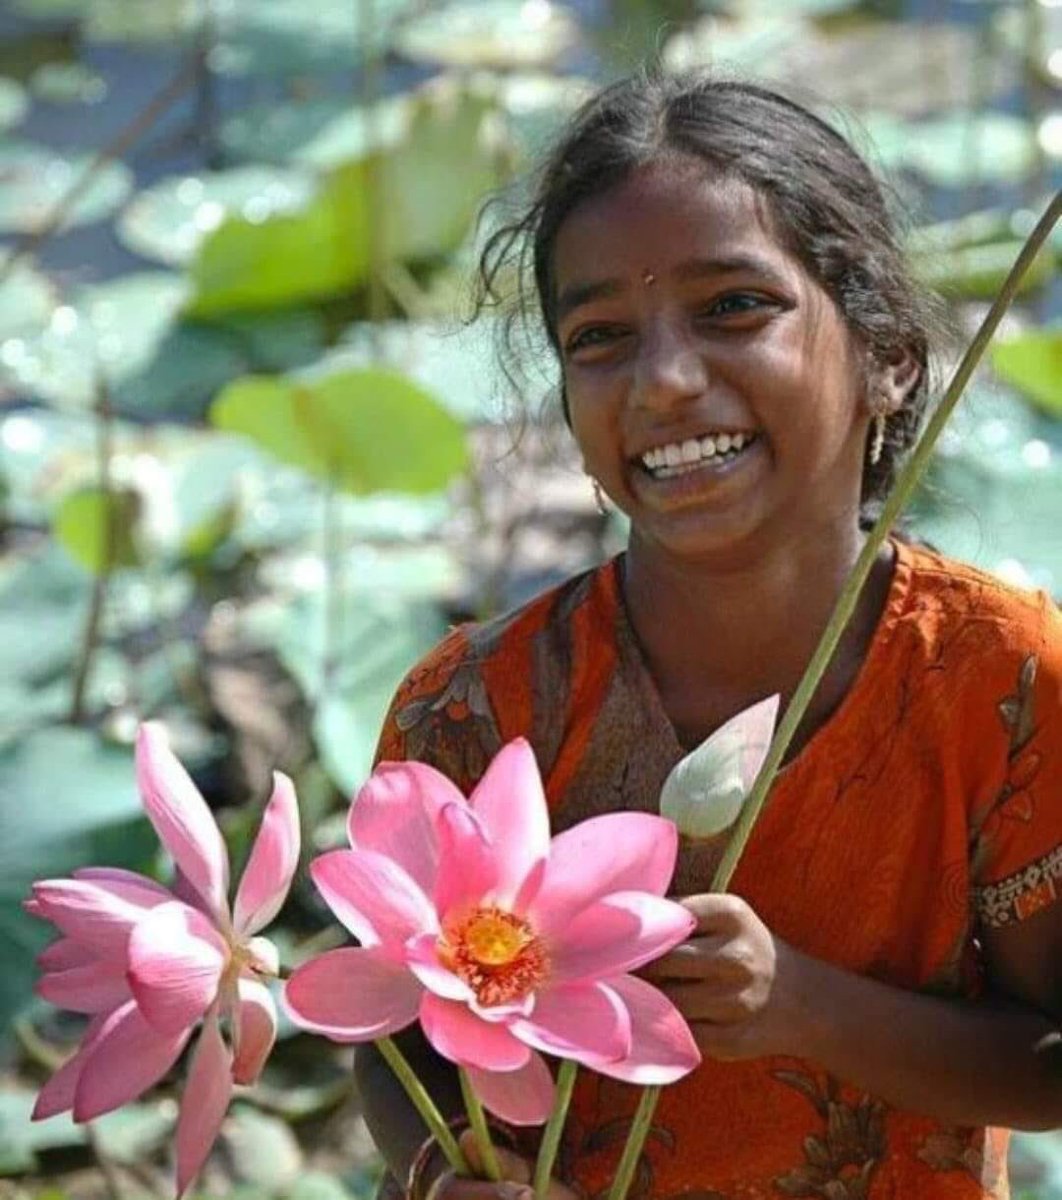 Цветы на индийском языке. Цветок лотоса Индия. Цветы Индии. Индианка в цветах. Индийская женщина с цветами.